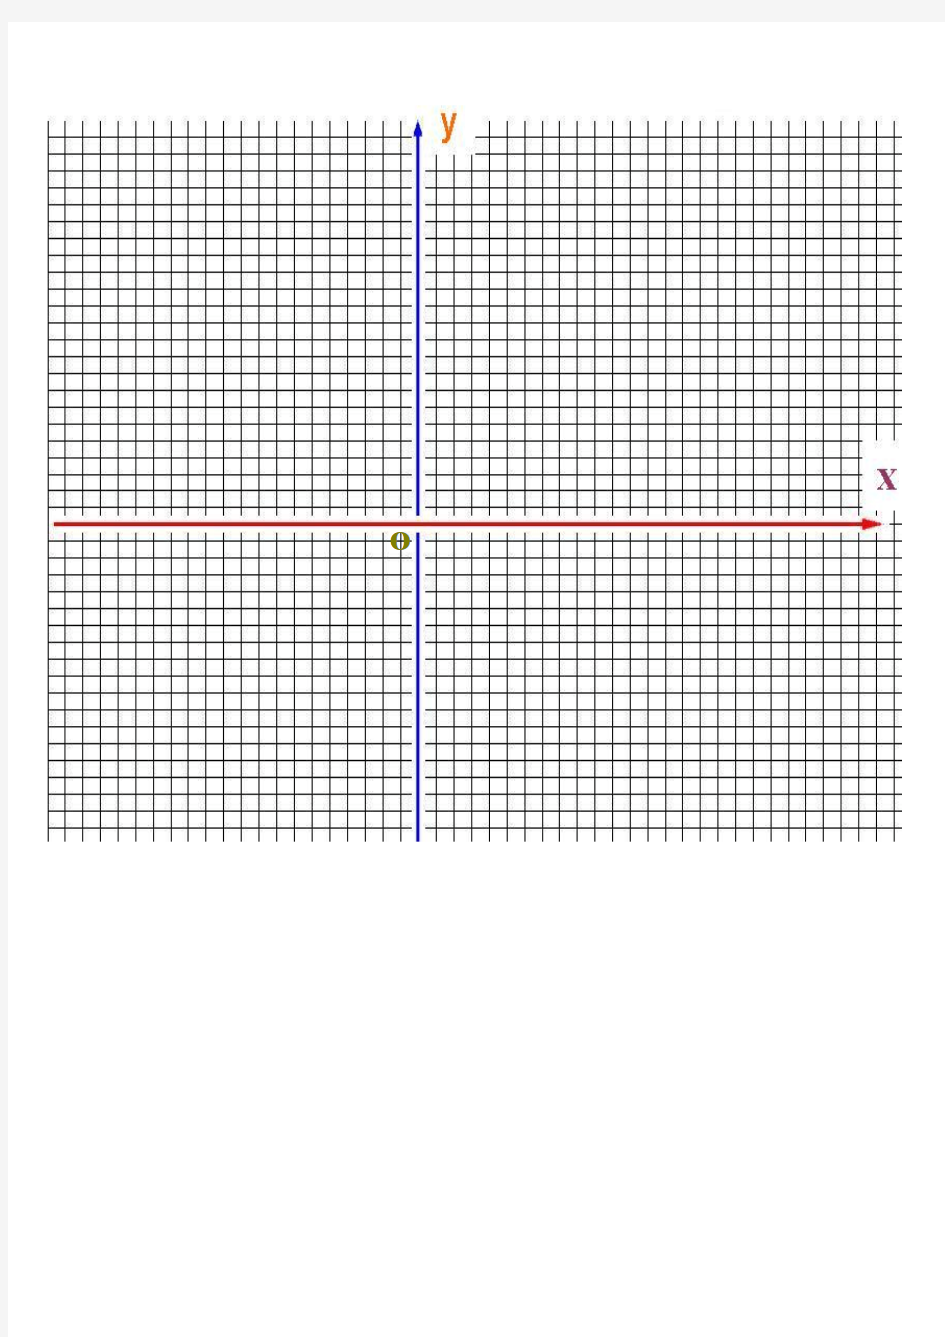 直角坐标系格子图